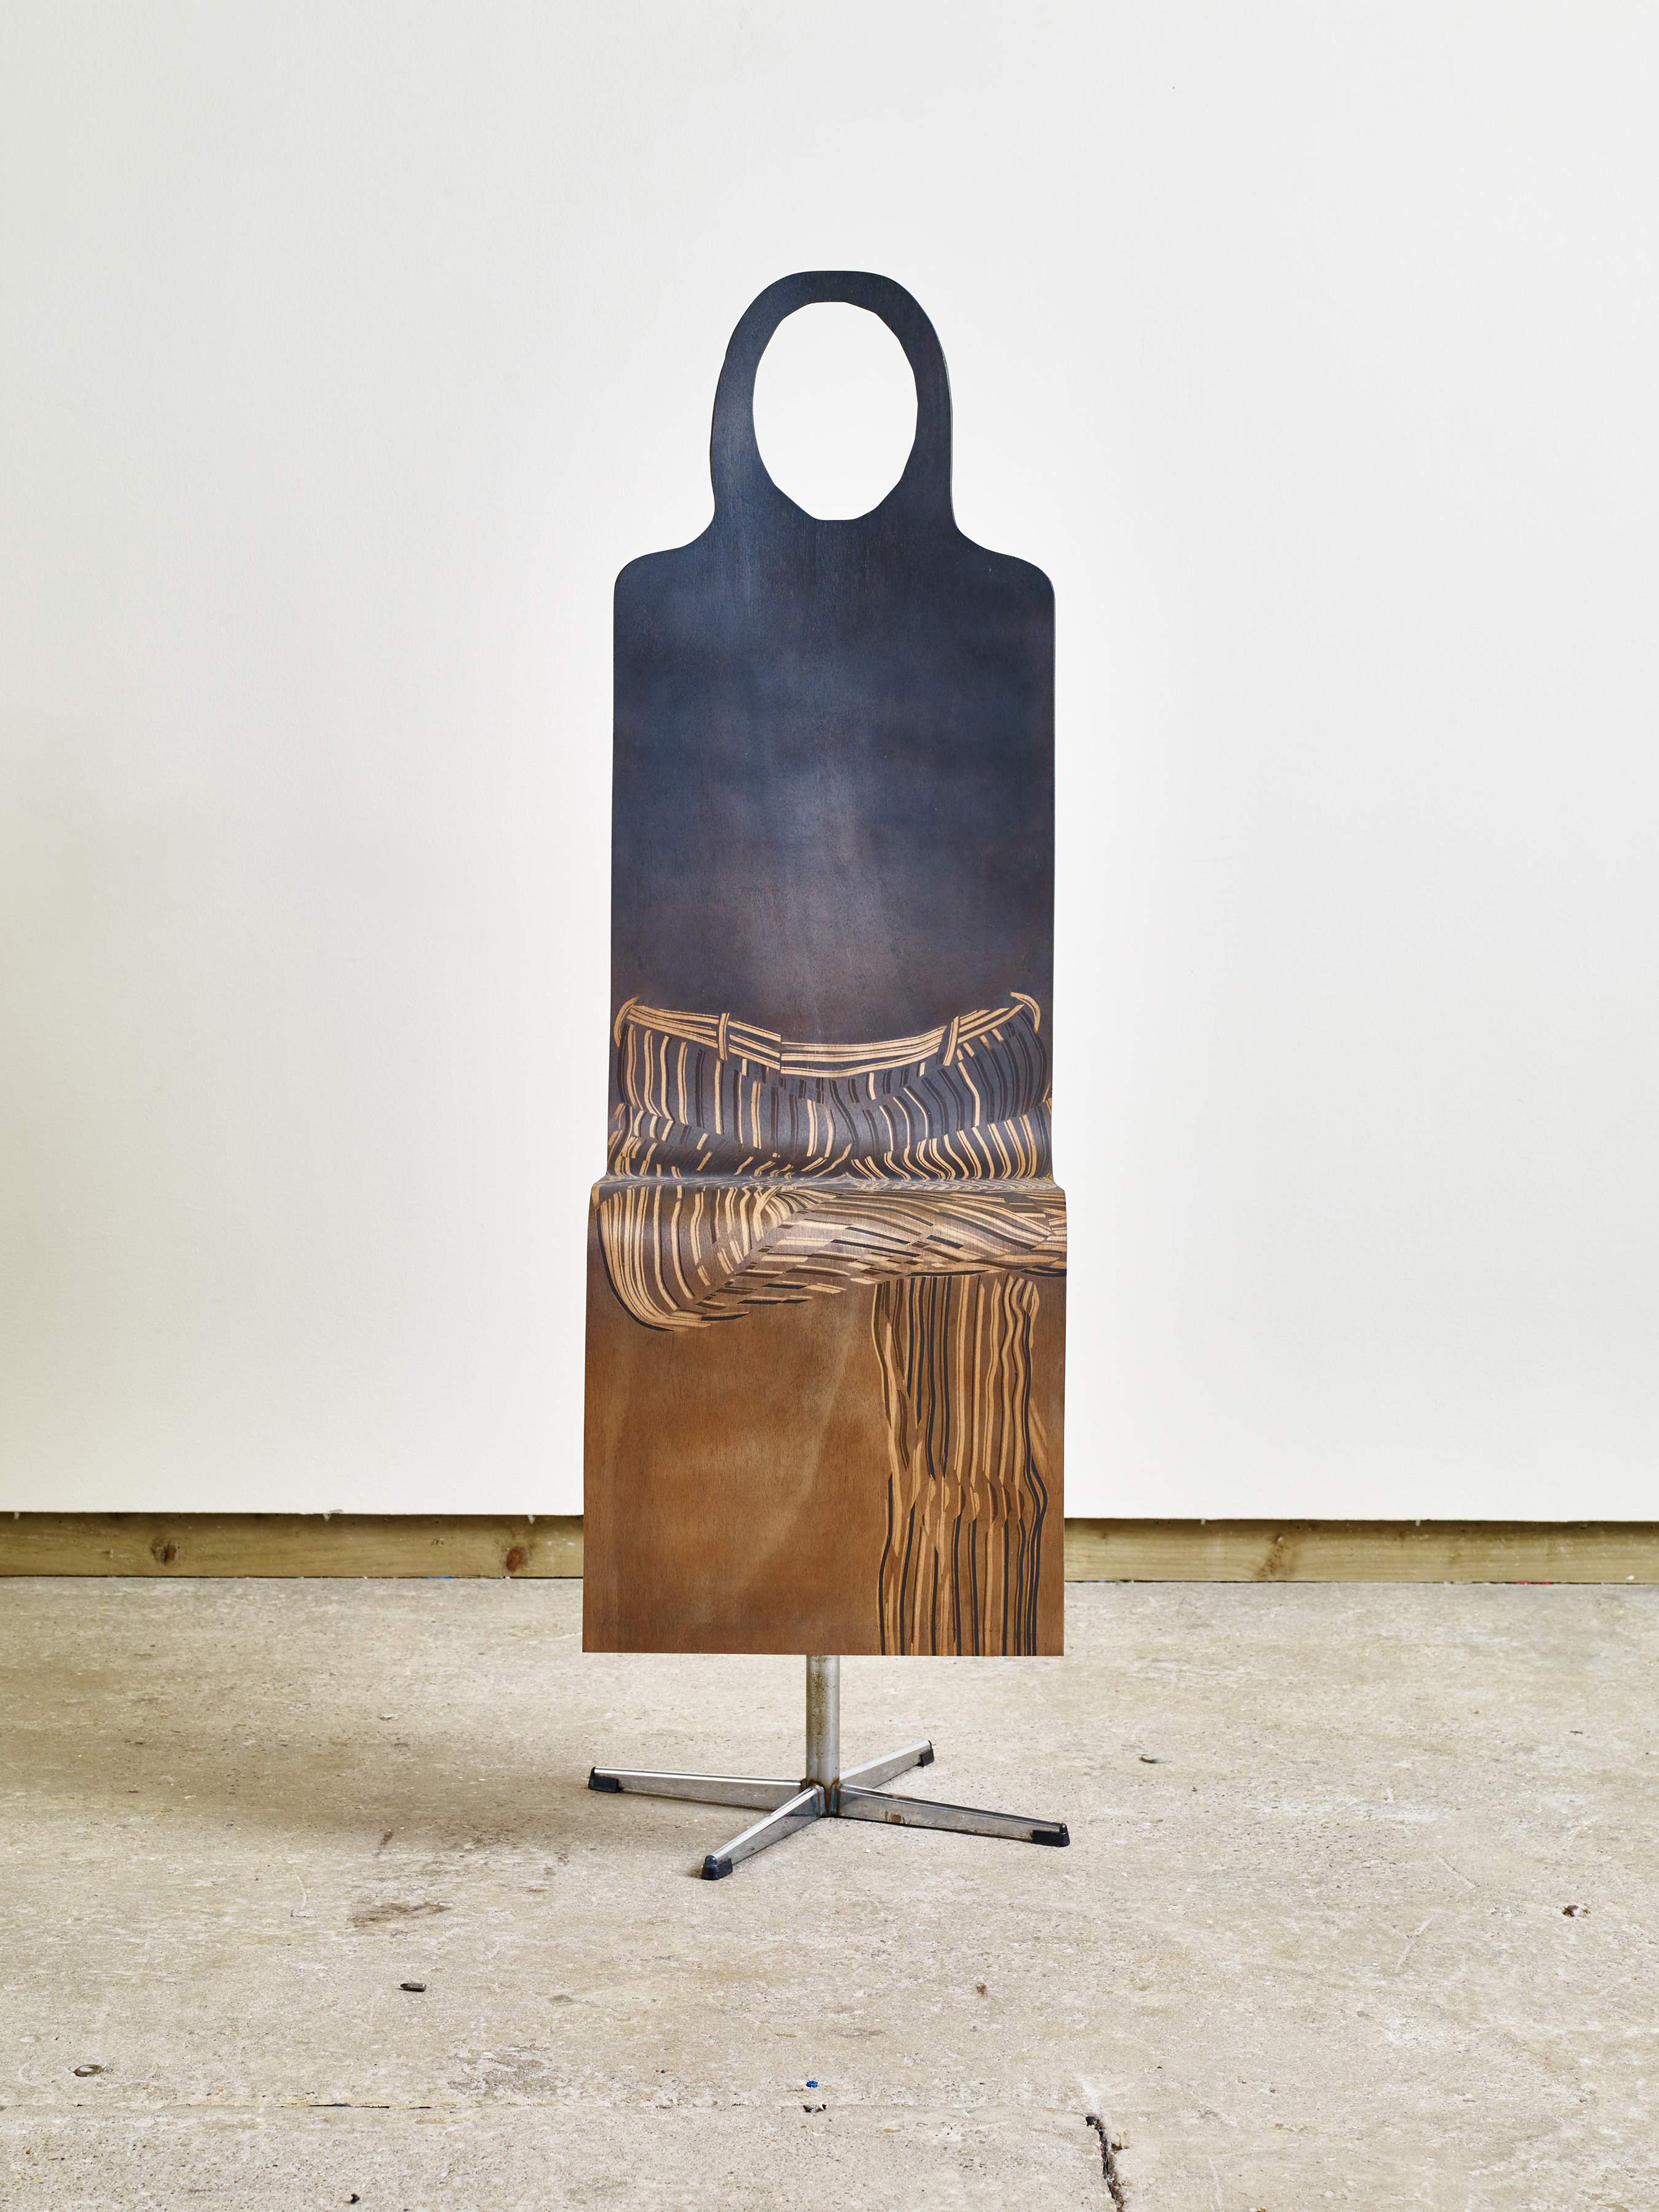 Galerie Barbara Thumm \ Fiona Banner: Pinstripe Chair 5 (FBa-15-019) \ Pinstripe Chair 5 (2015)